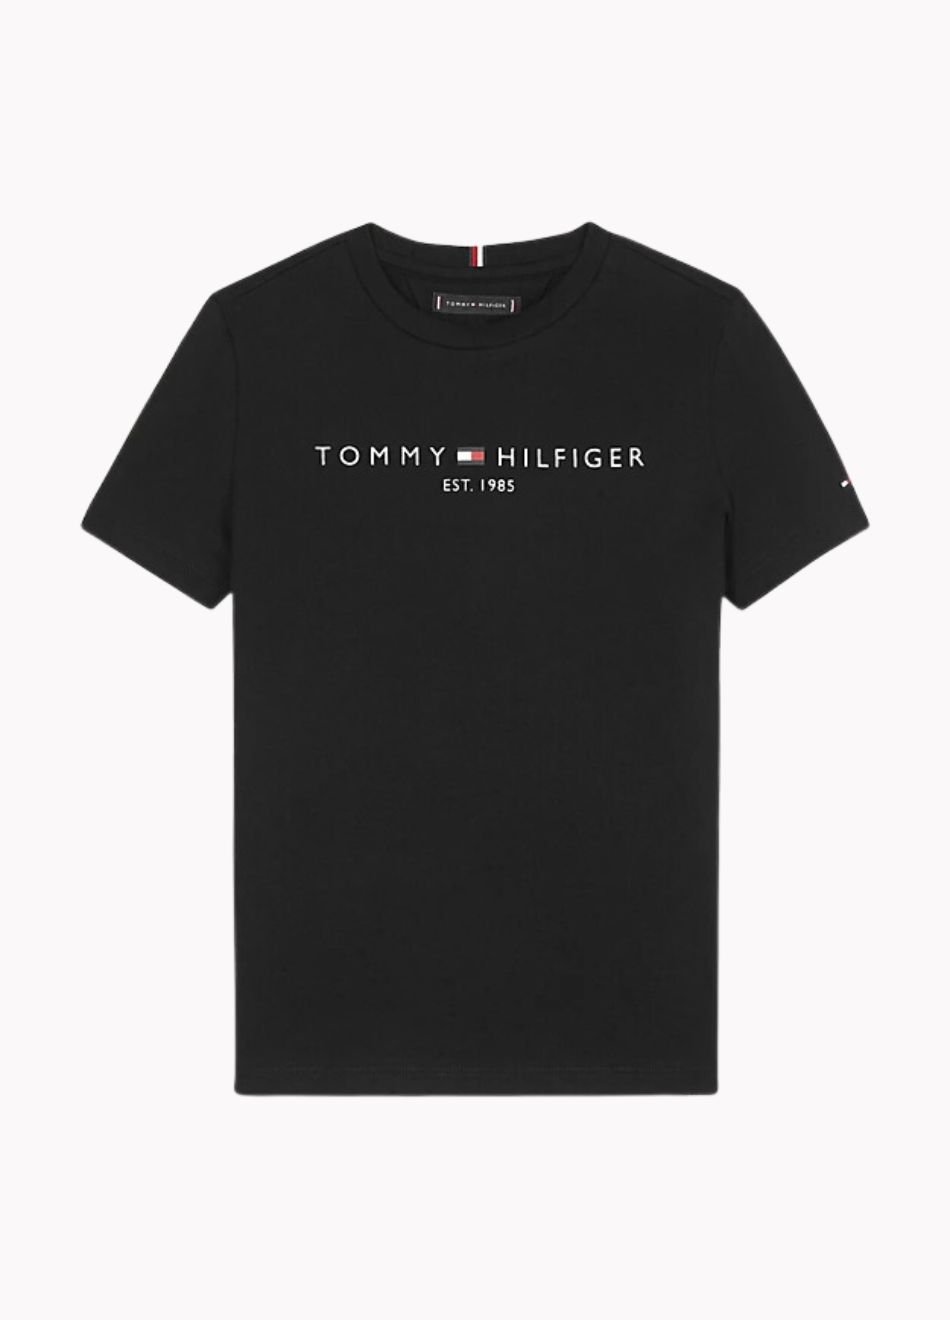 Camiseta Tommy Hilfiger Clássica Gola C Preta - Faz a Boa!